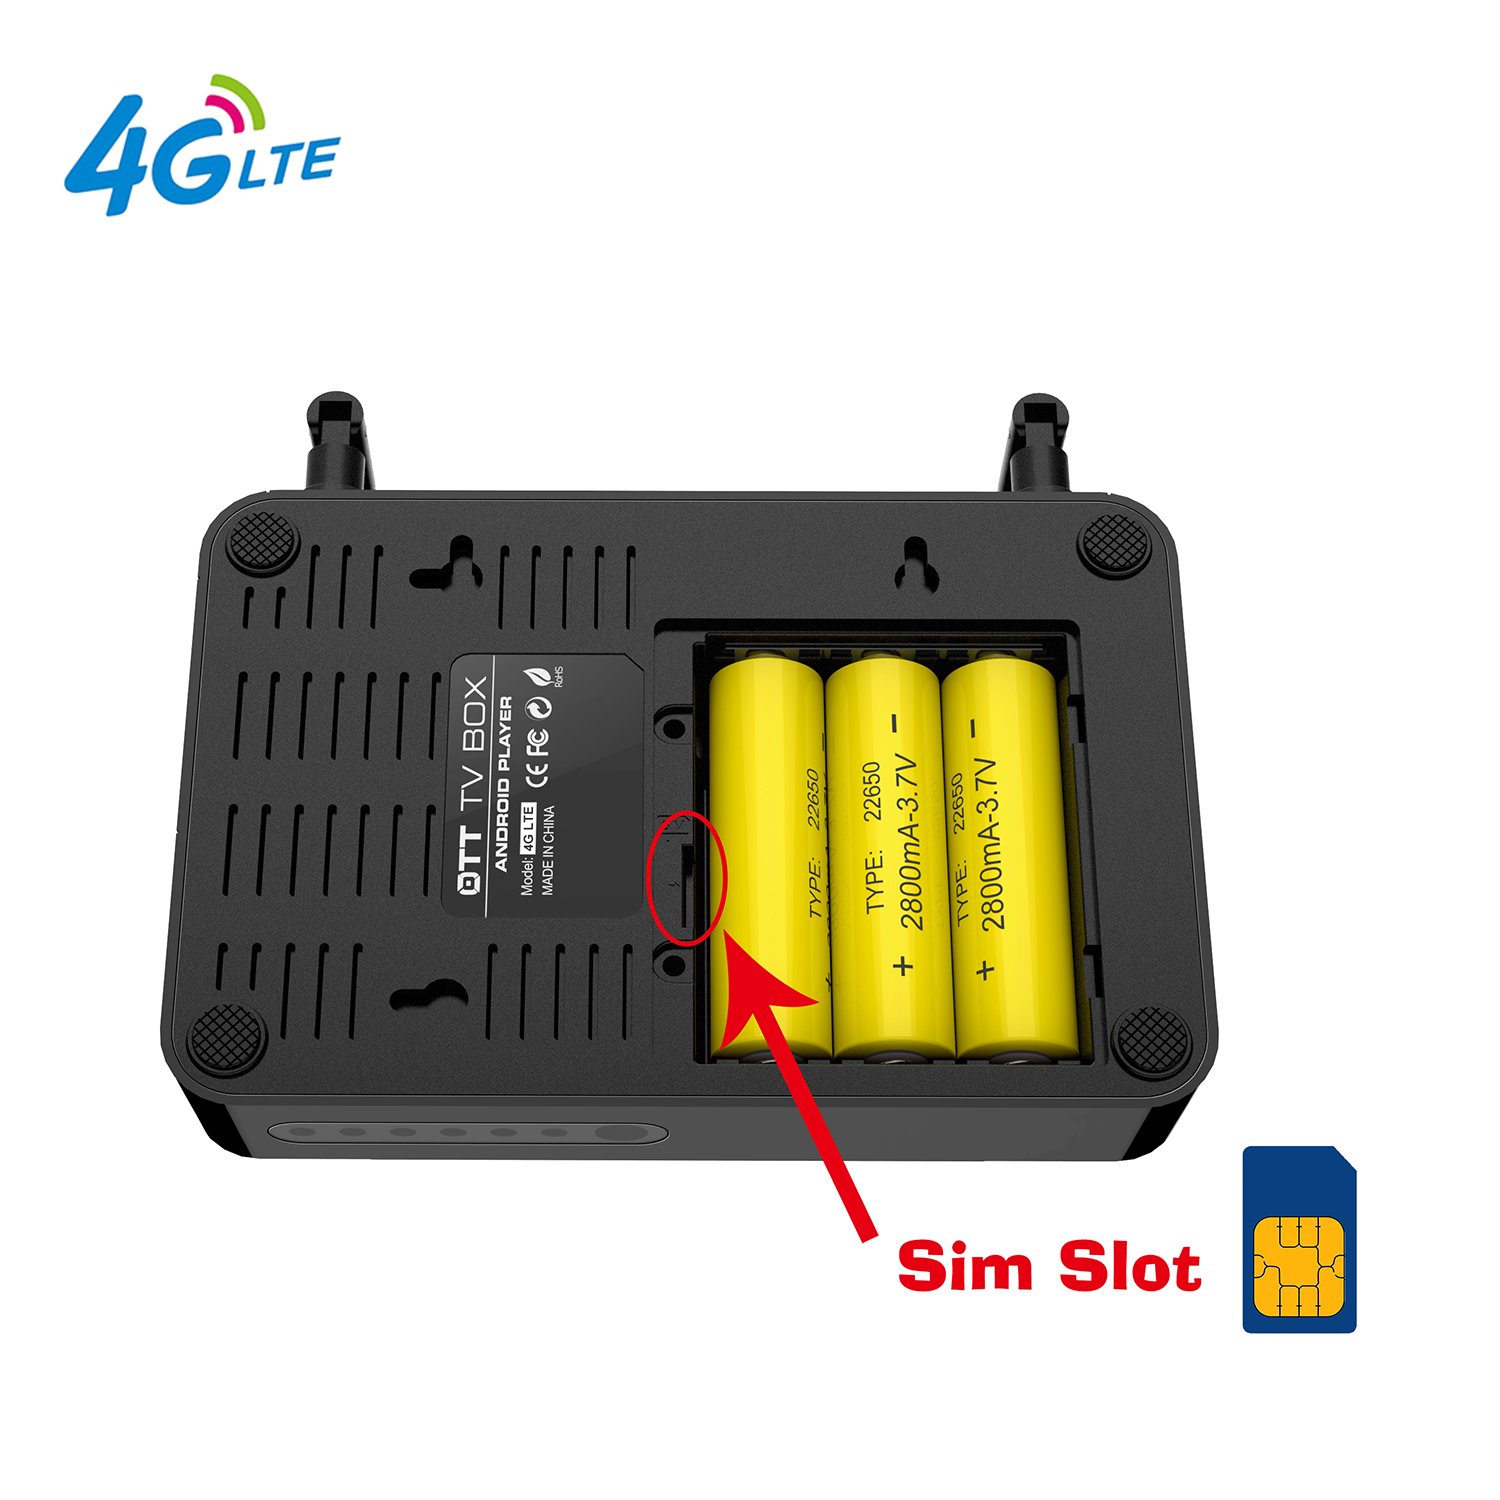 3G/4G SIM 카드 슬롯이 있는 안드로이드 TV 박스에 내장된 3G/4G LTE WCDMA 무선 모듈이 탑재된 안드로이드 TV 박스